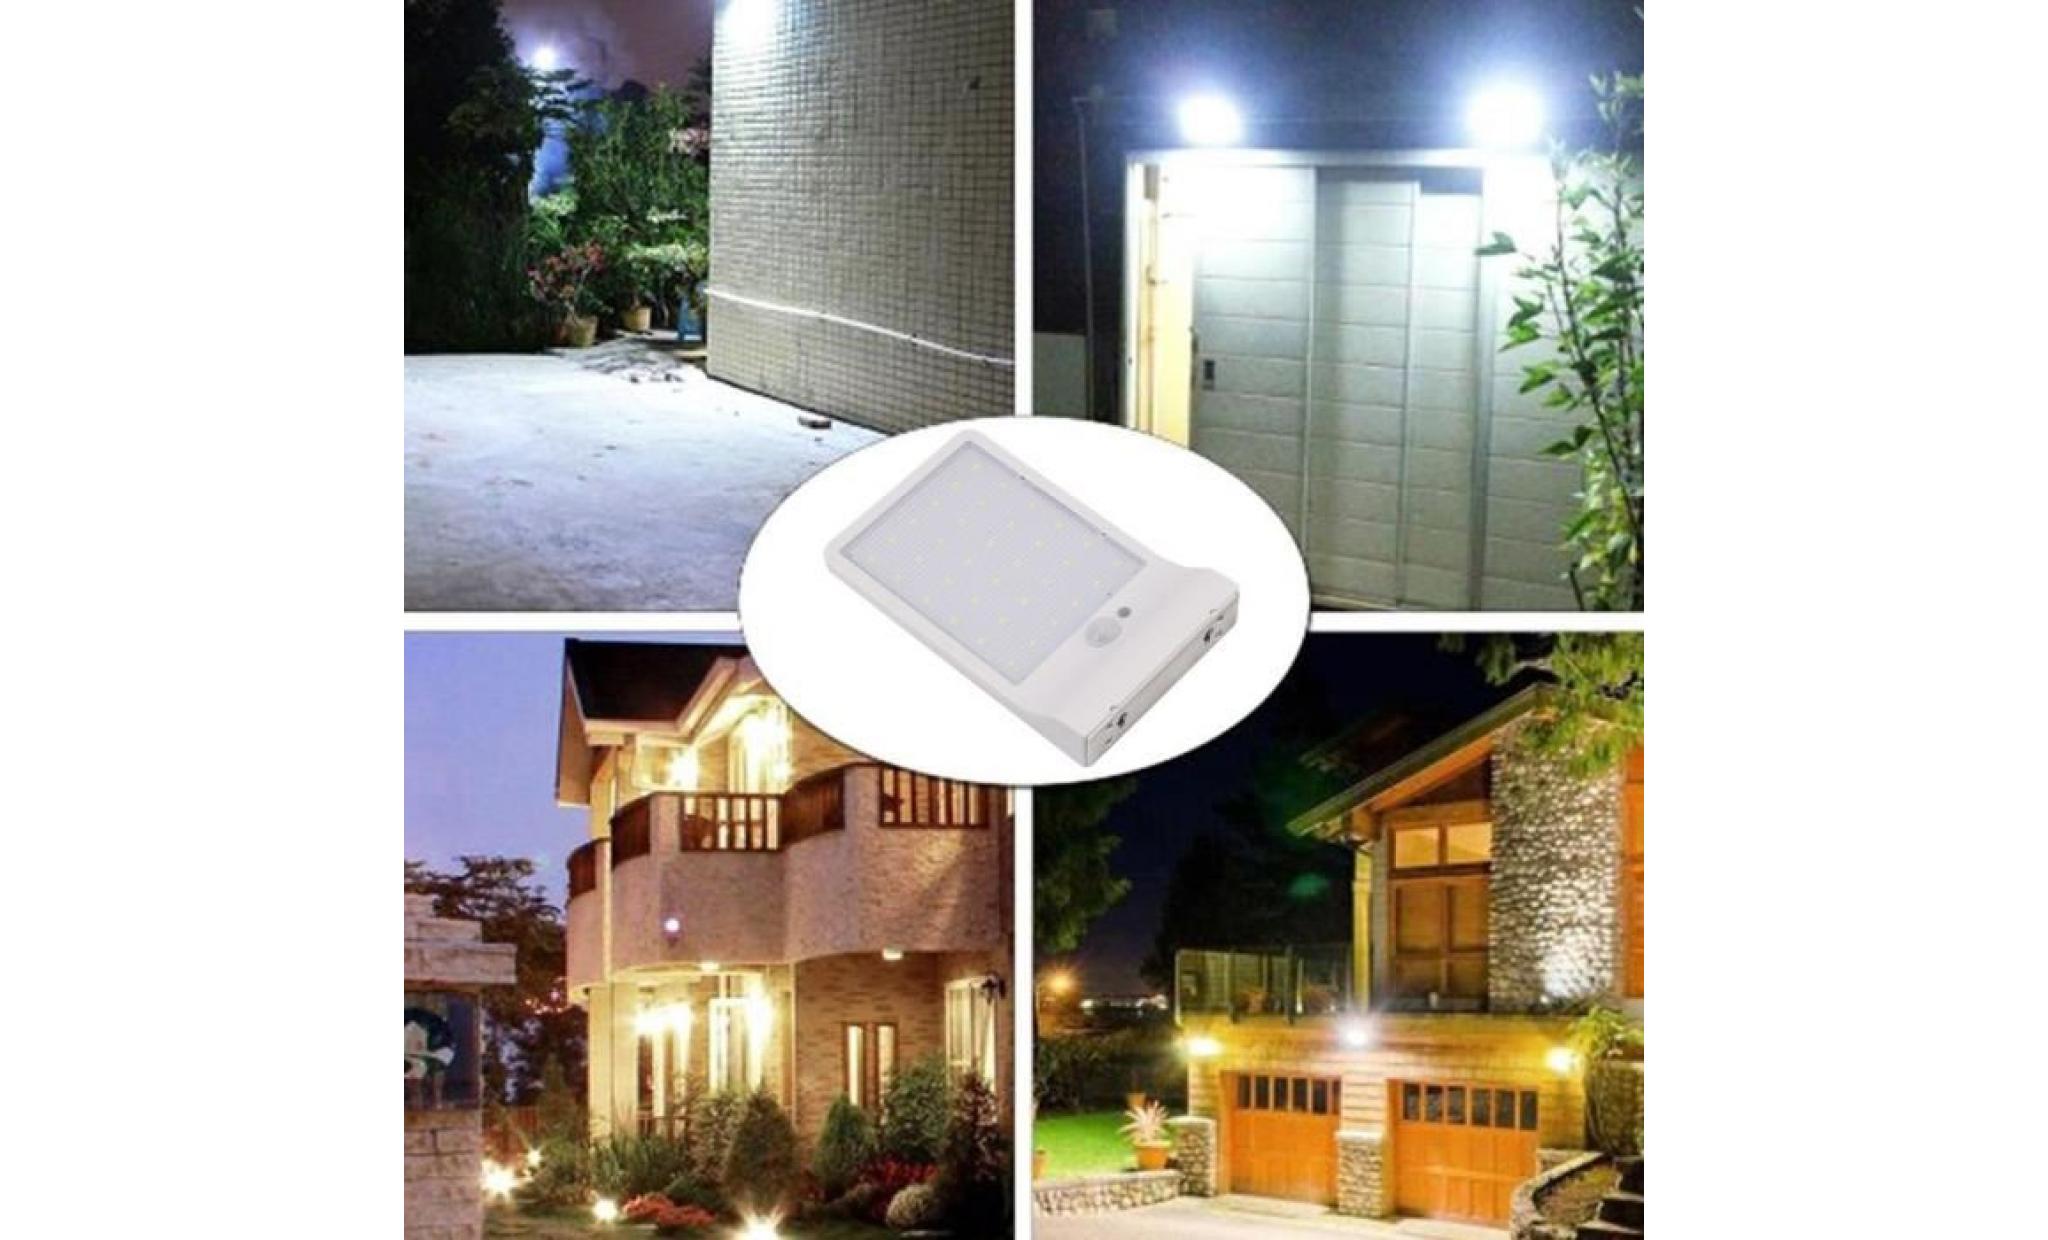 borne solaire lumière imperméable de lampe de sécurité de jardin de capteur de mouvement actionné solaire de led #pa 141 pas cher